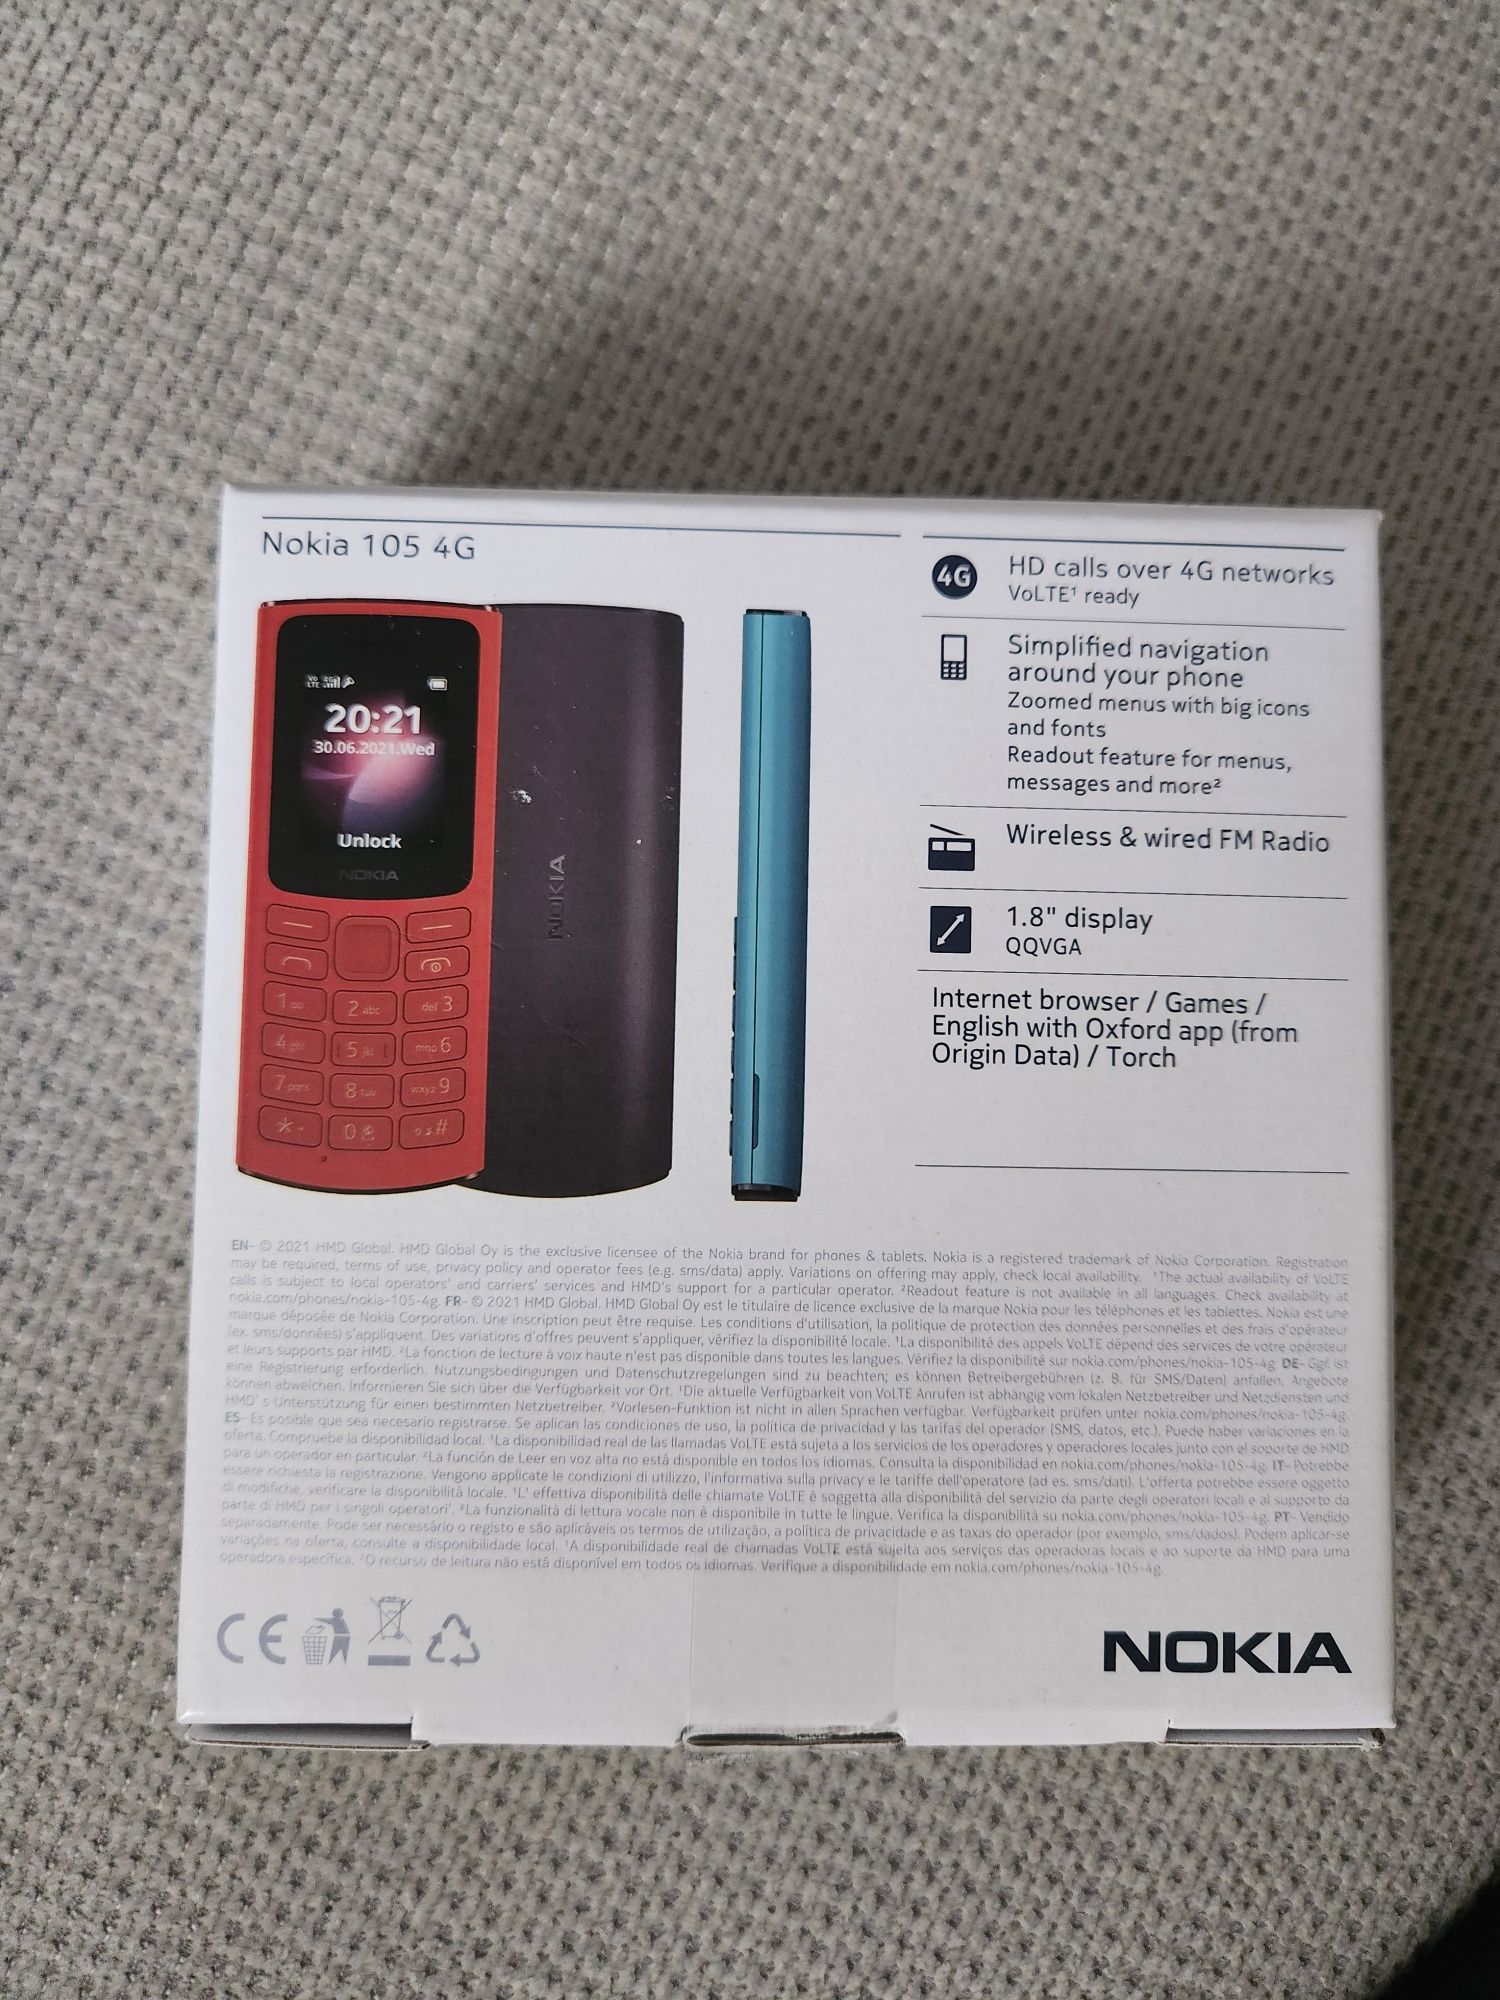 Nokia 105 4G LTE VoLTE Dual Sim